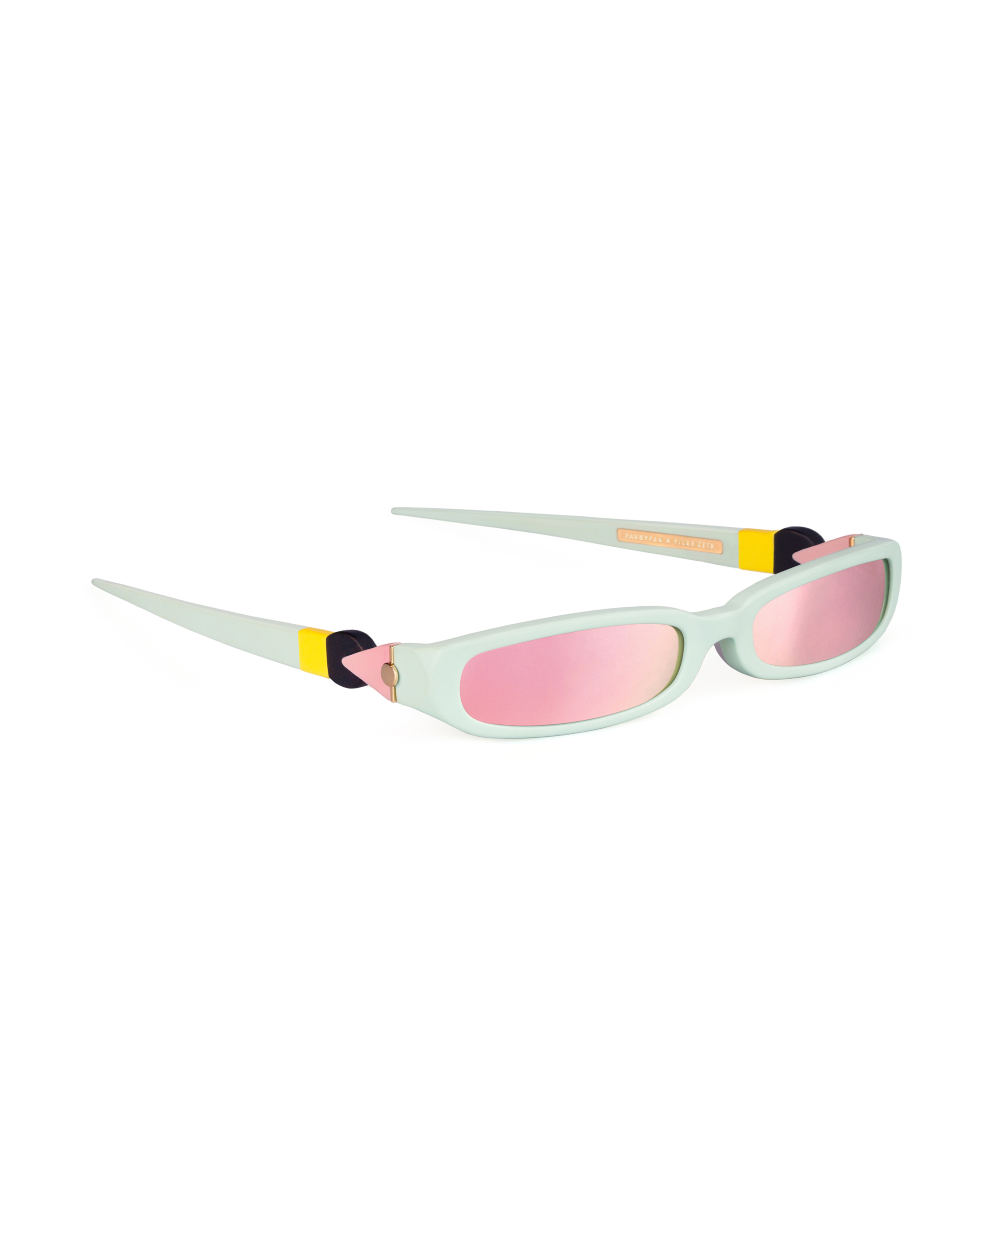 GRACE. Sunglasses. Matte Mint &amp; Mirrored Pink